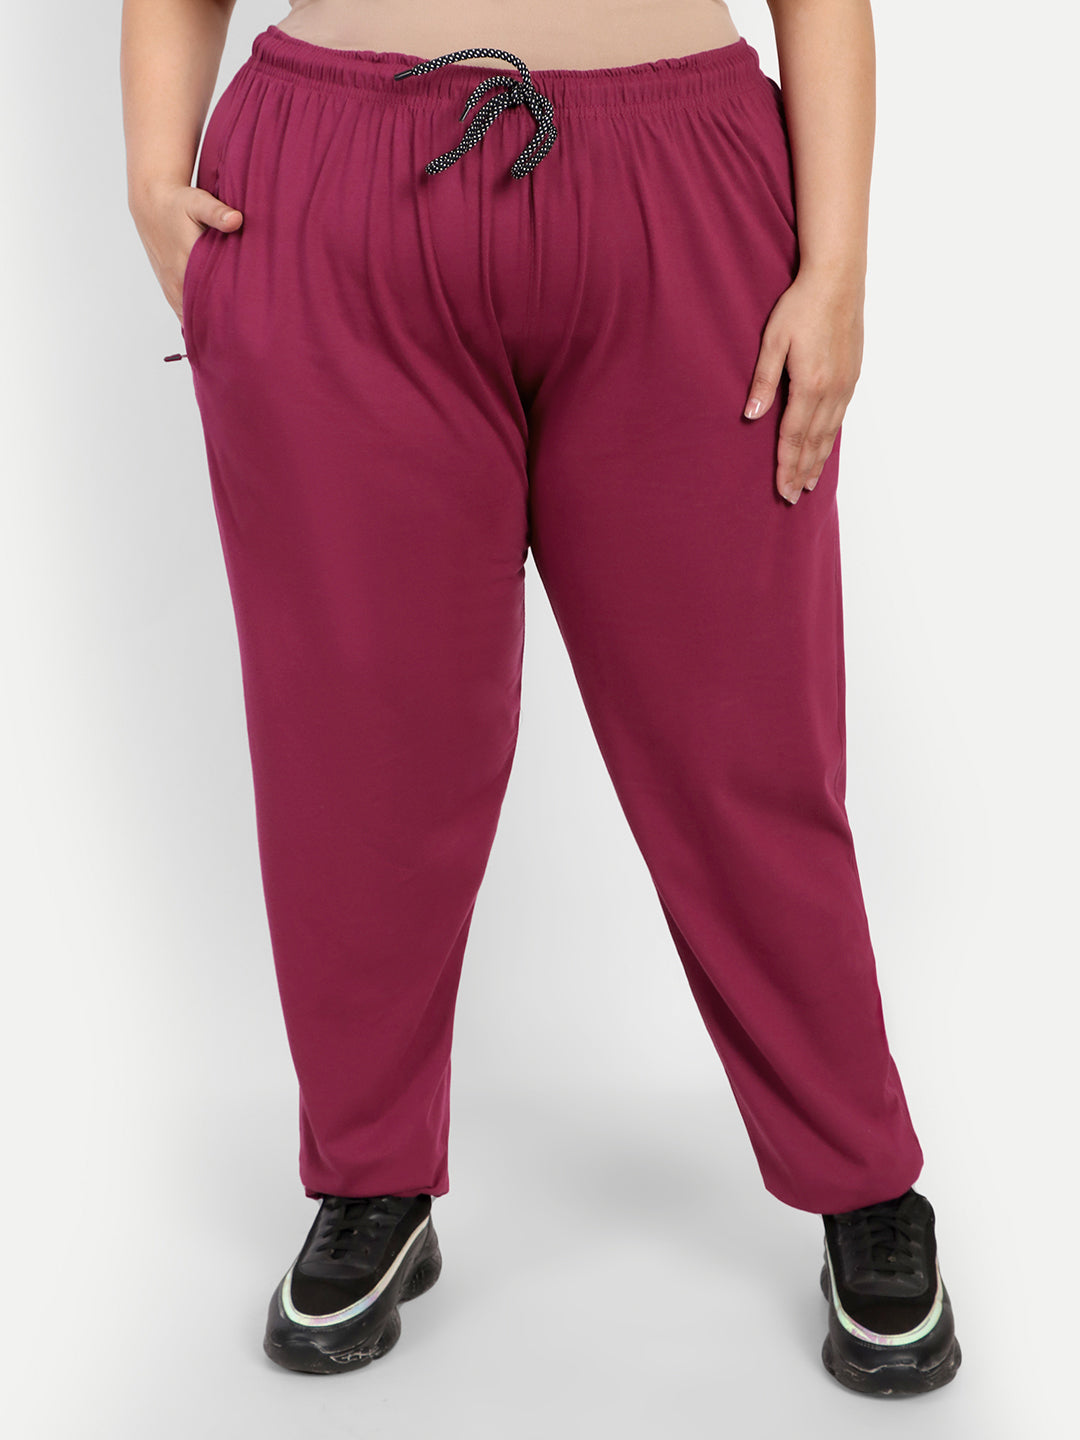 Plus Size Track Pants For Women - Cotton Pajamas - Purple